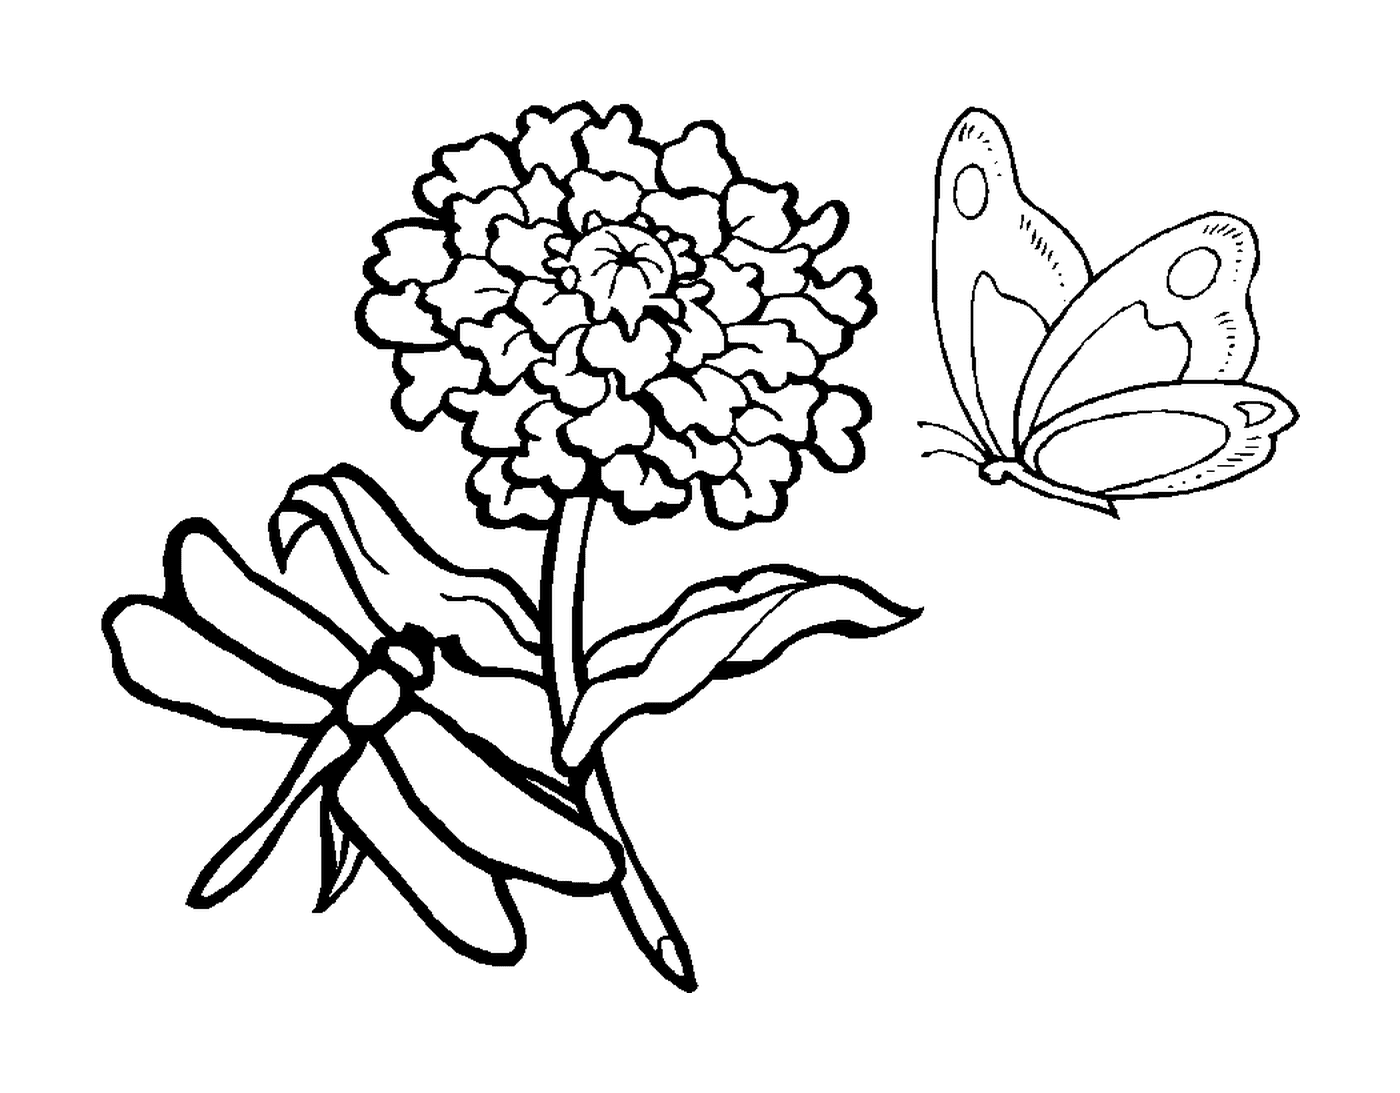  Стрекоза и бабочка рядом 